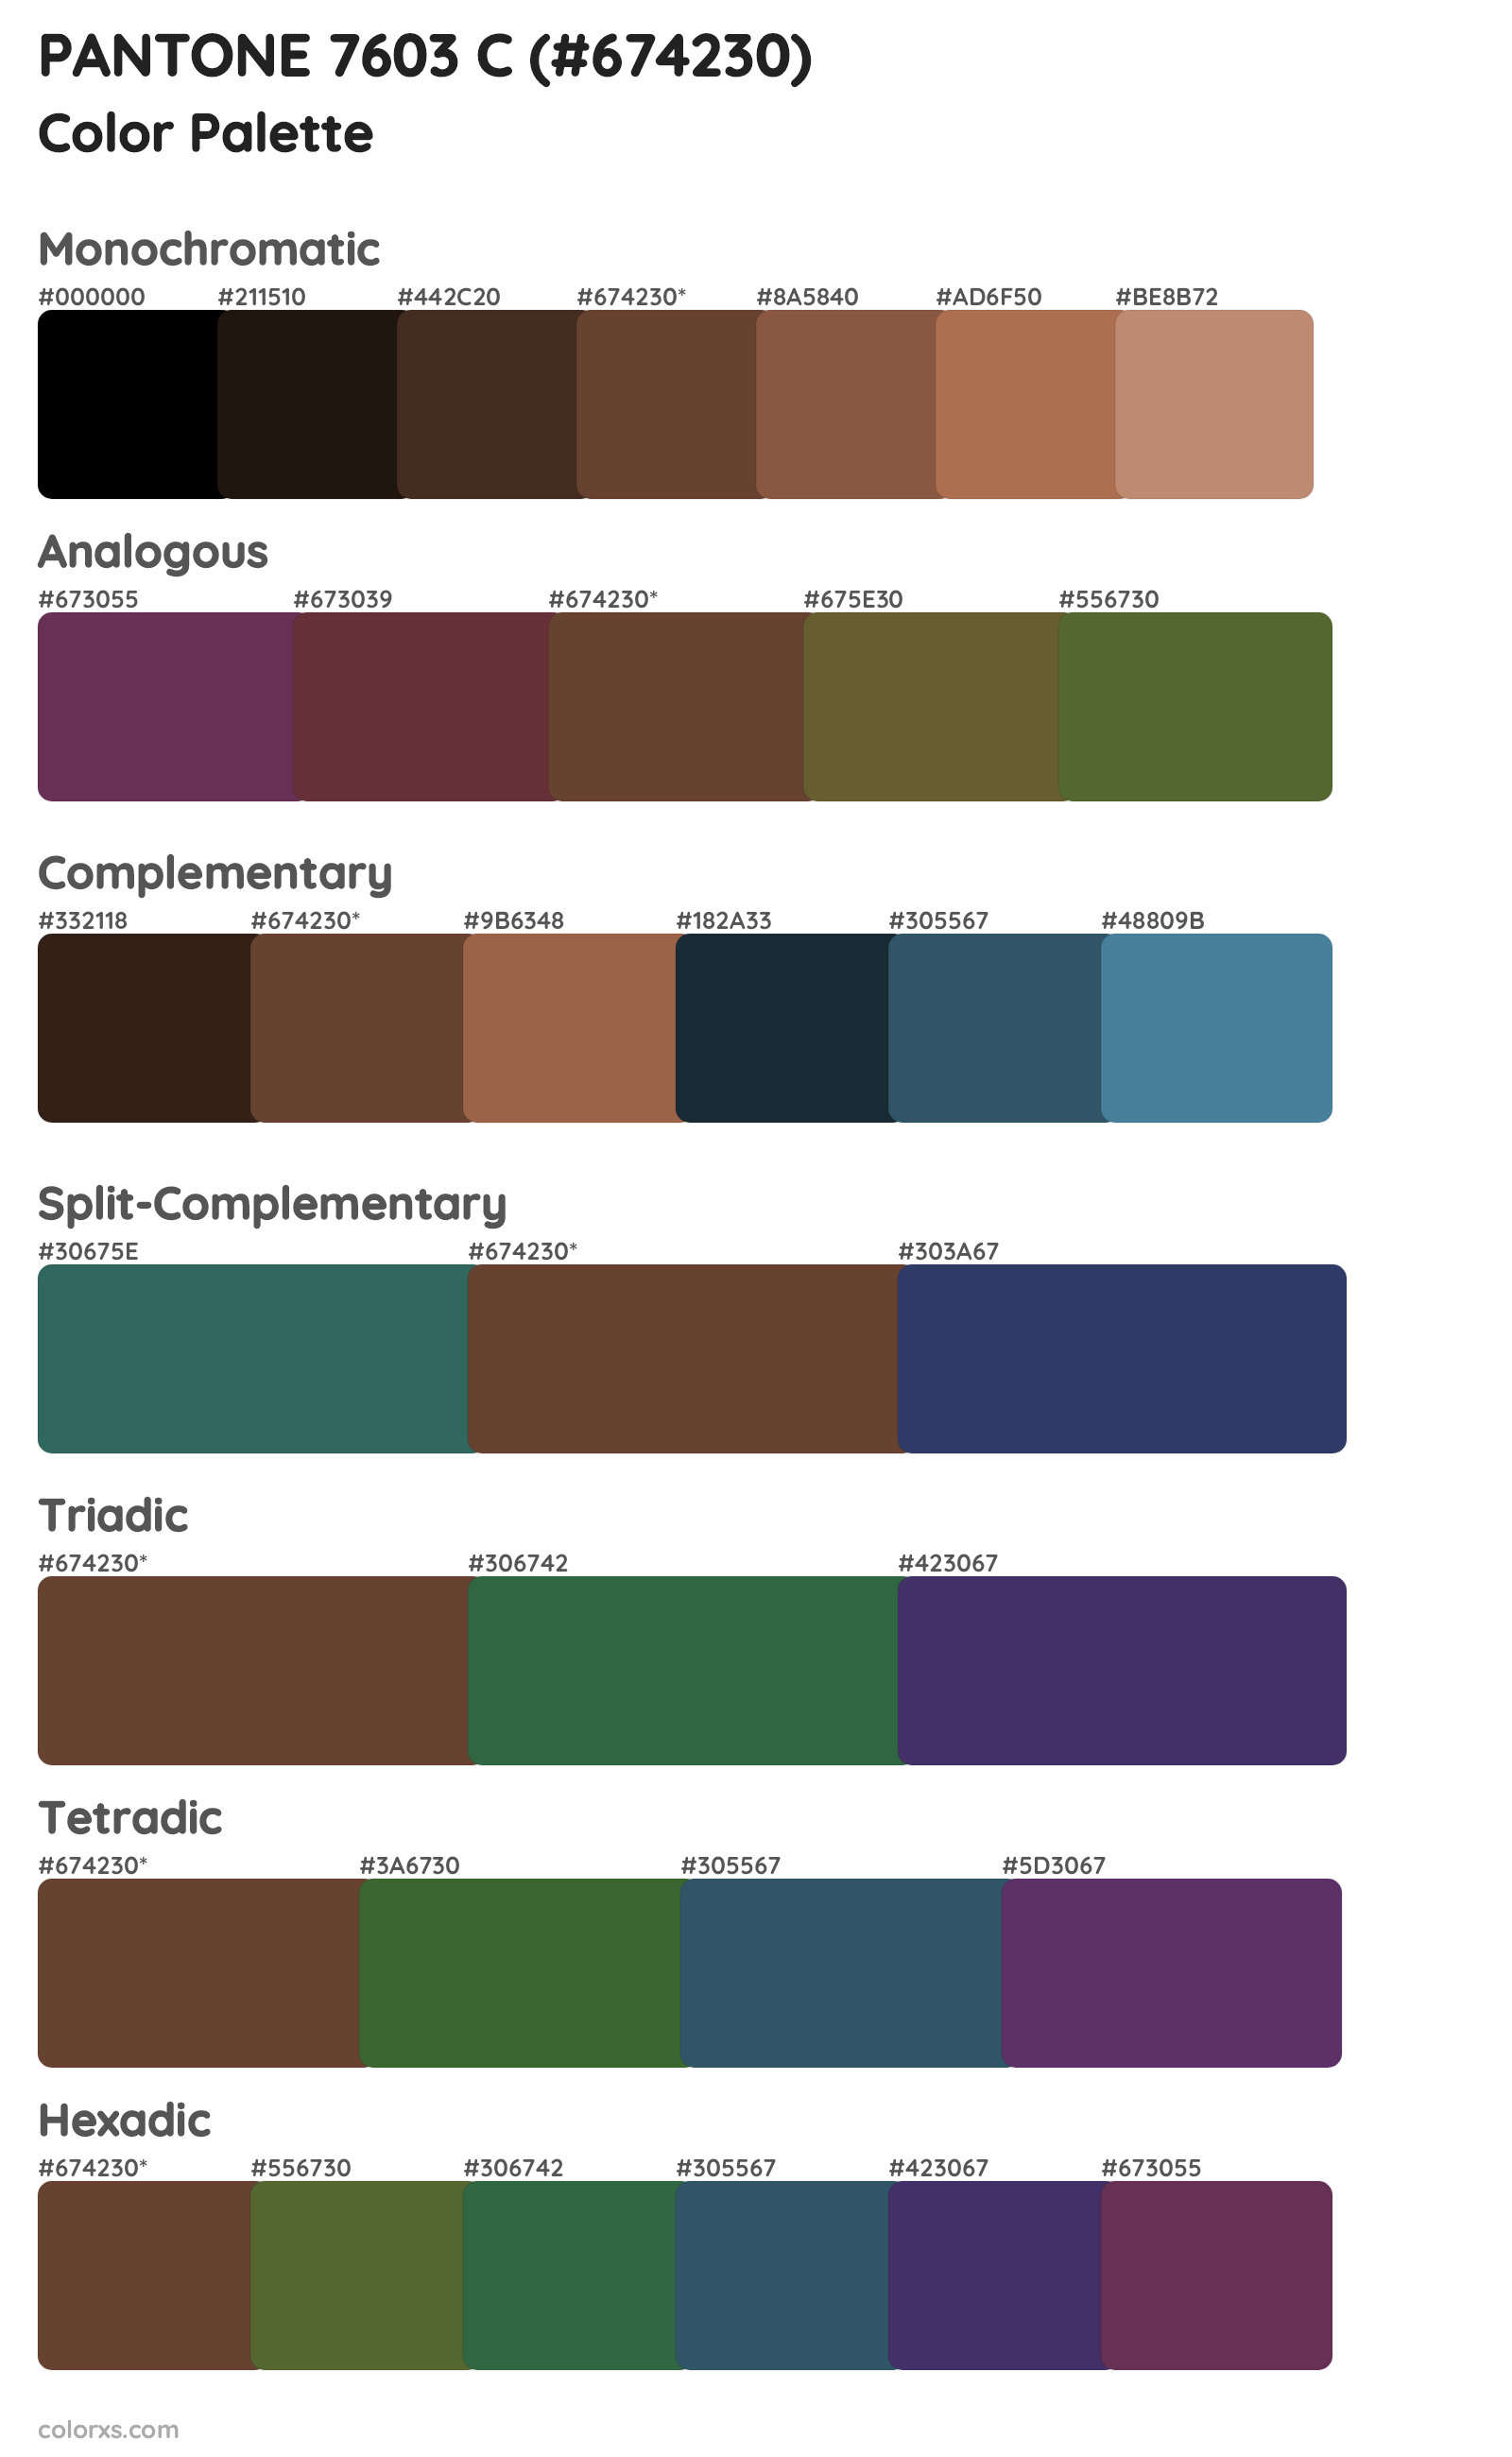 PANTONE 7603 C Color Scheme Palettes